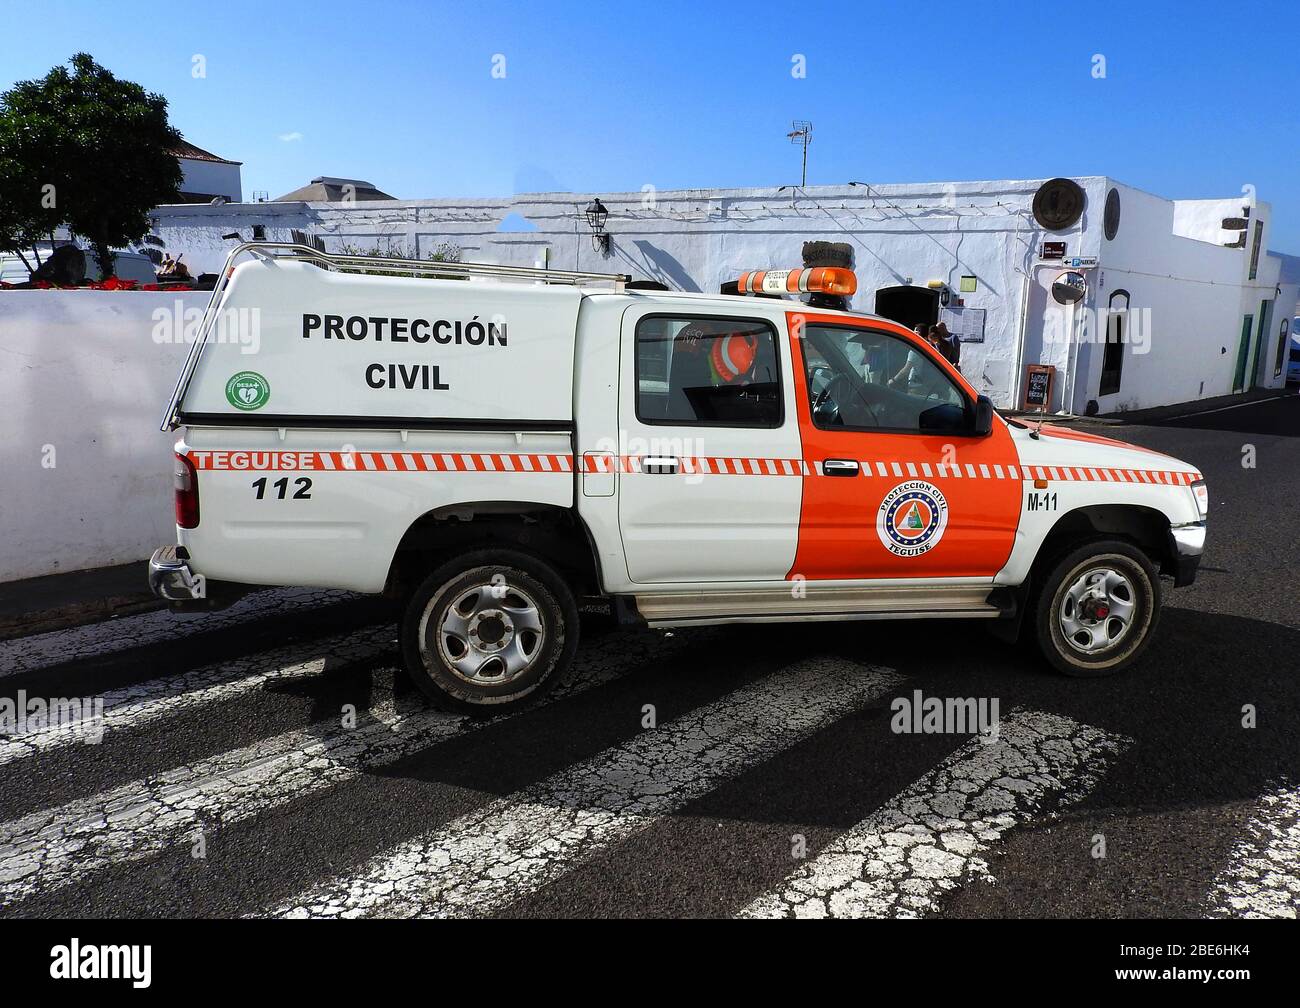 Teguise Zivilverteidigung TOYOTA Fahrzeug auf der Insel Lanzarote, kanarische Inseln, Spanien,- Januar 2020. Der Zivilschutz oder die Zivilverteidigung in Spanien begann am 12. August 1949 über das Protokoll 1 zusätzlich zum Genfer Vertrag, um sich mit dem "Schutz der Opfer internationaler bewaffneter Konflikte" zu beschäftigen und die Arbeit des Roten Kreuzes zu ergänzen. Heute sind sie in alles von Verkehrsmanagement und Rettung bis zu lokalen Katastrophen beteiligt. In diesem Fall blockierten sie Autos, die in Straßen in der Nähe eines regionalen Marktes parken. Die Farbe Orange wird auch von Rettungsfahrzeugen verwendet. Stockfoto